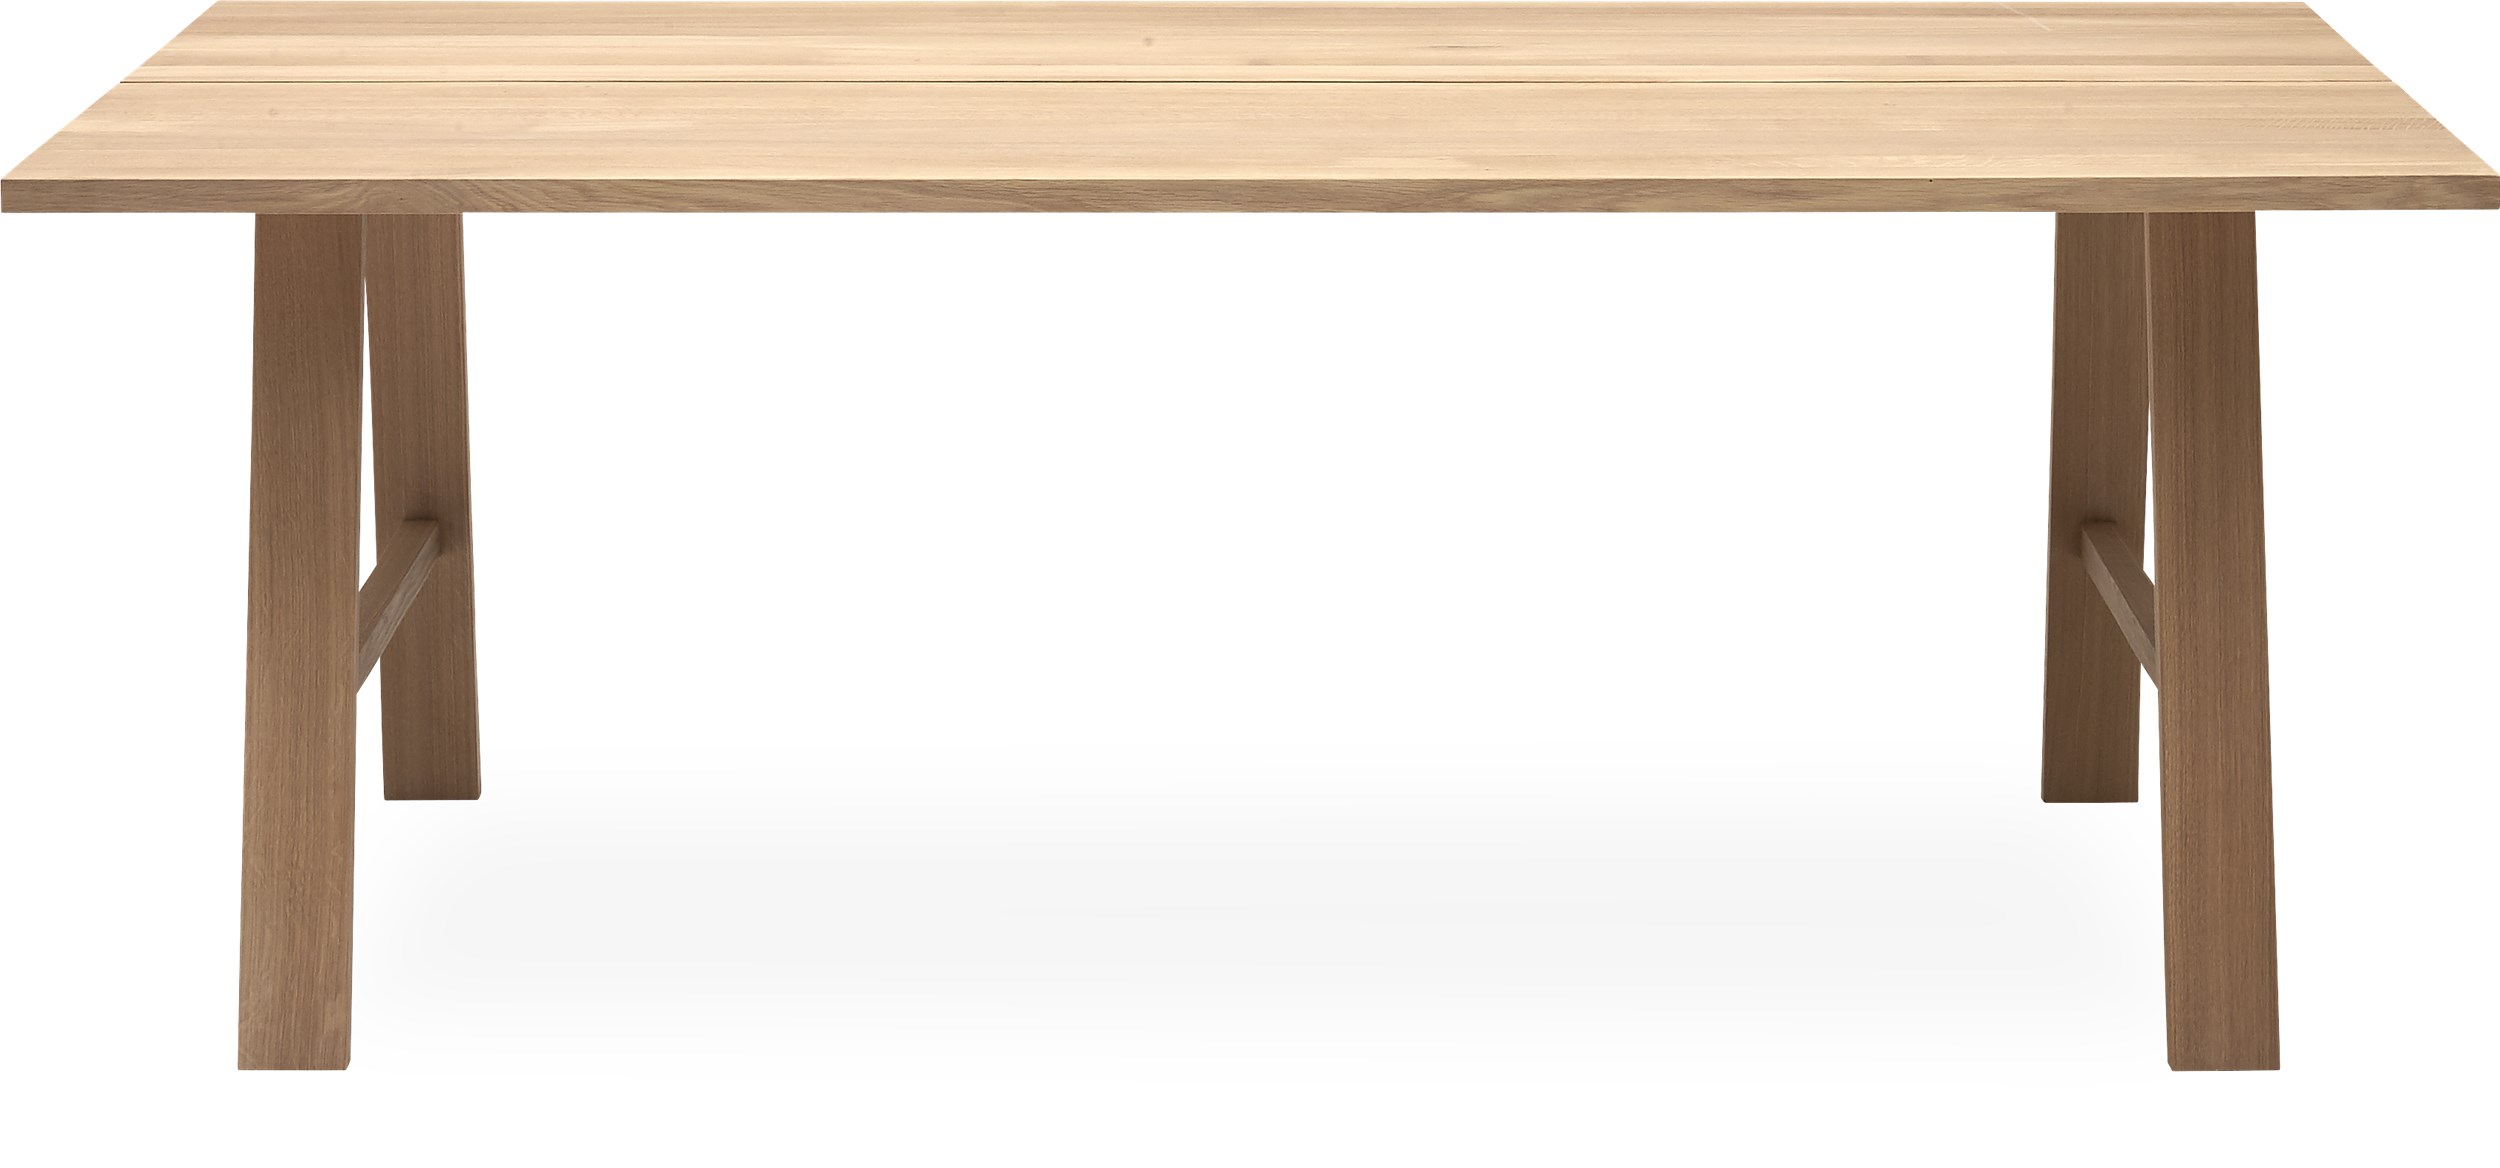 Timber 200 x 100 x 74 cm Matbord - Matbord